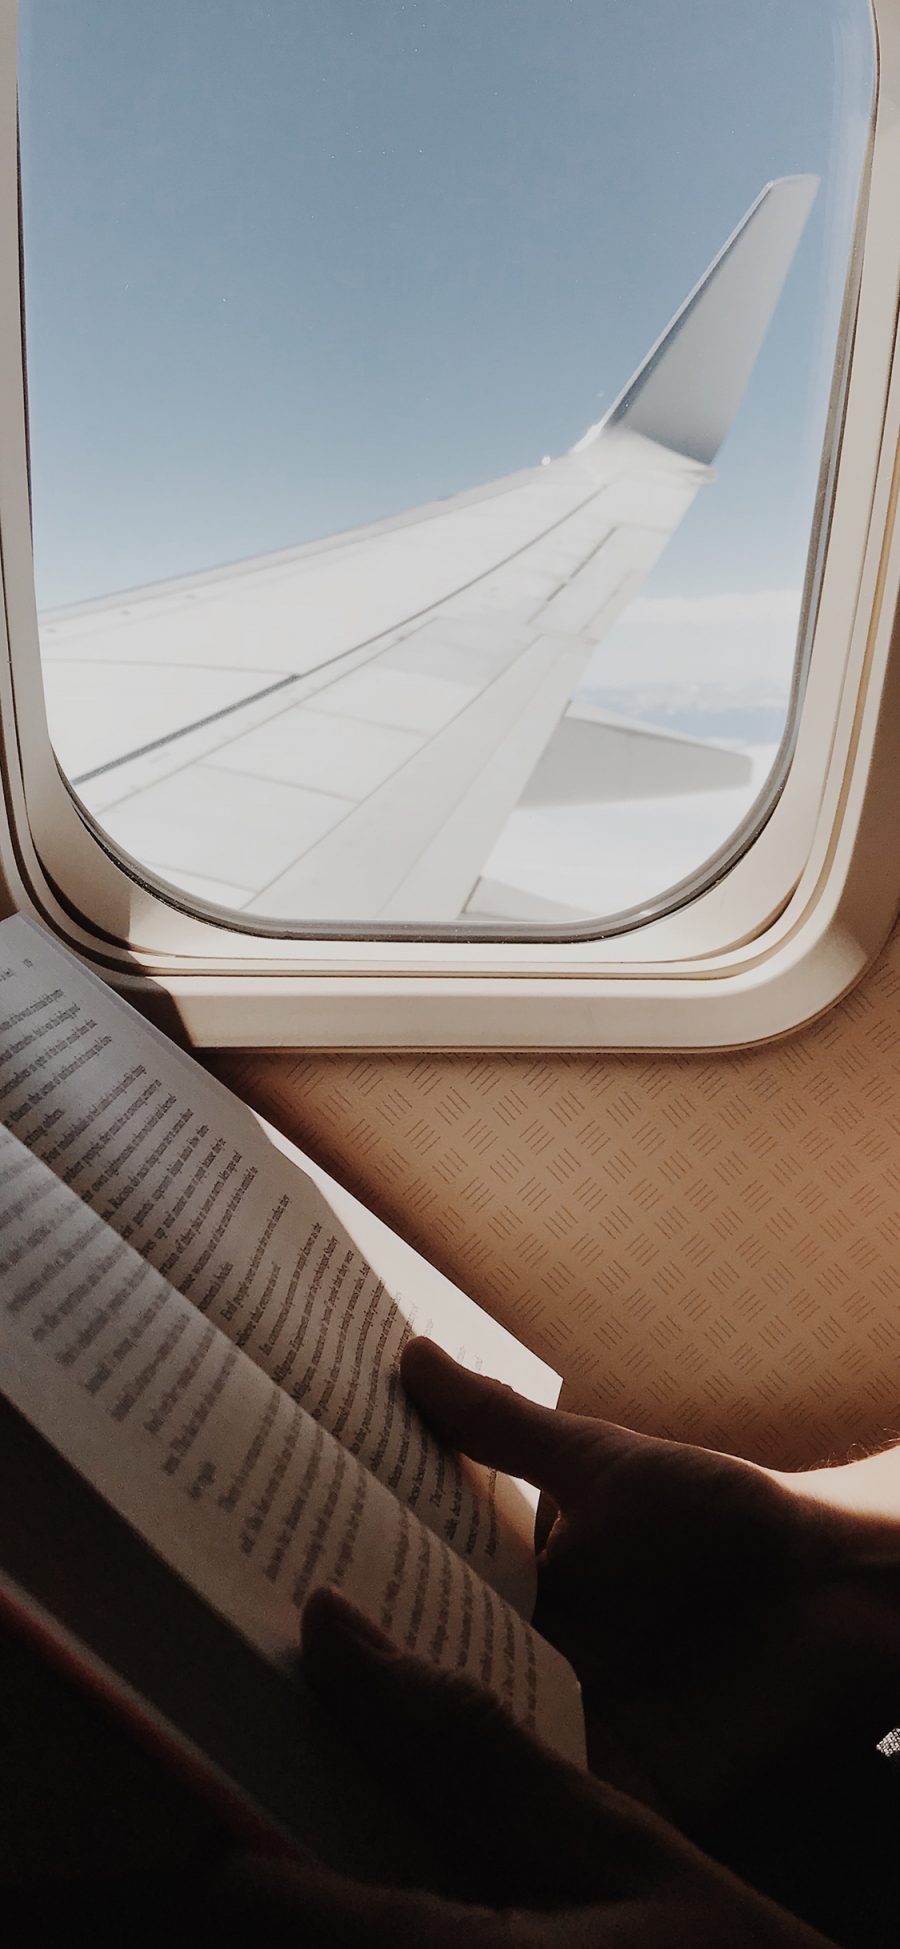 [2436×1125]飞机 机窗 机翼 书本 阅读 苹果手机壁纸图片